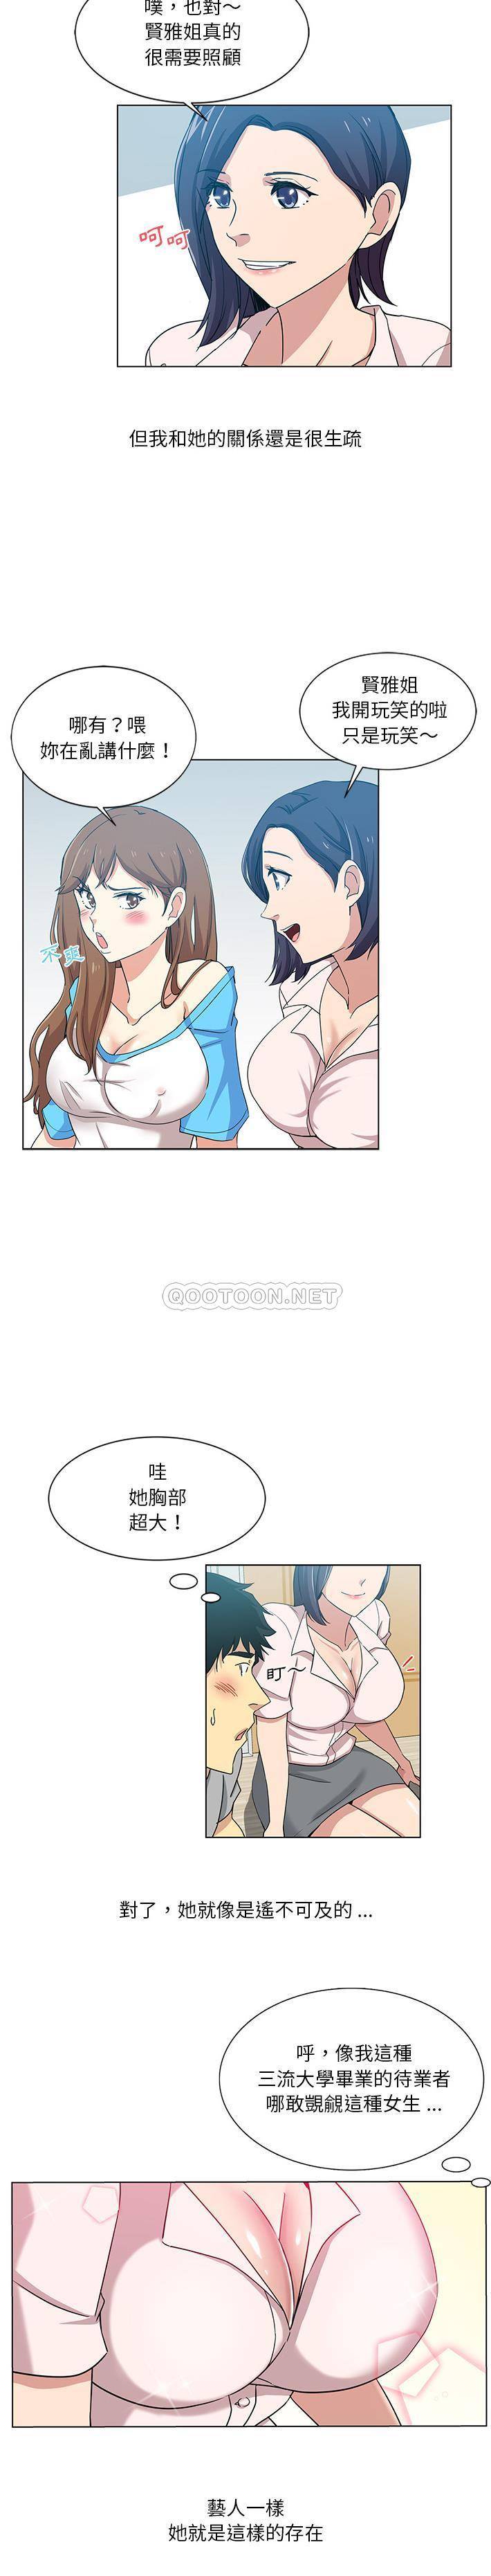 韩国污漫画 危險純友誼 第1话 11